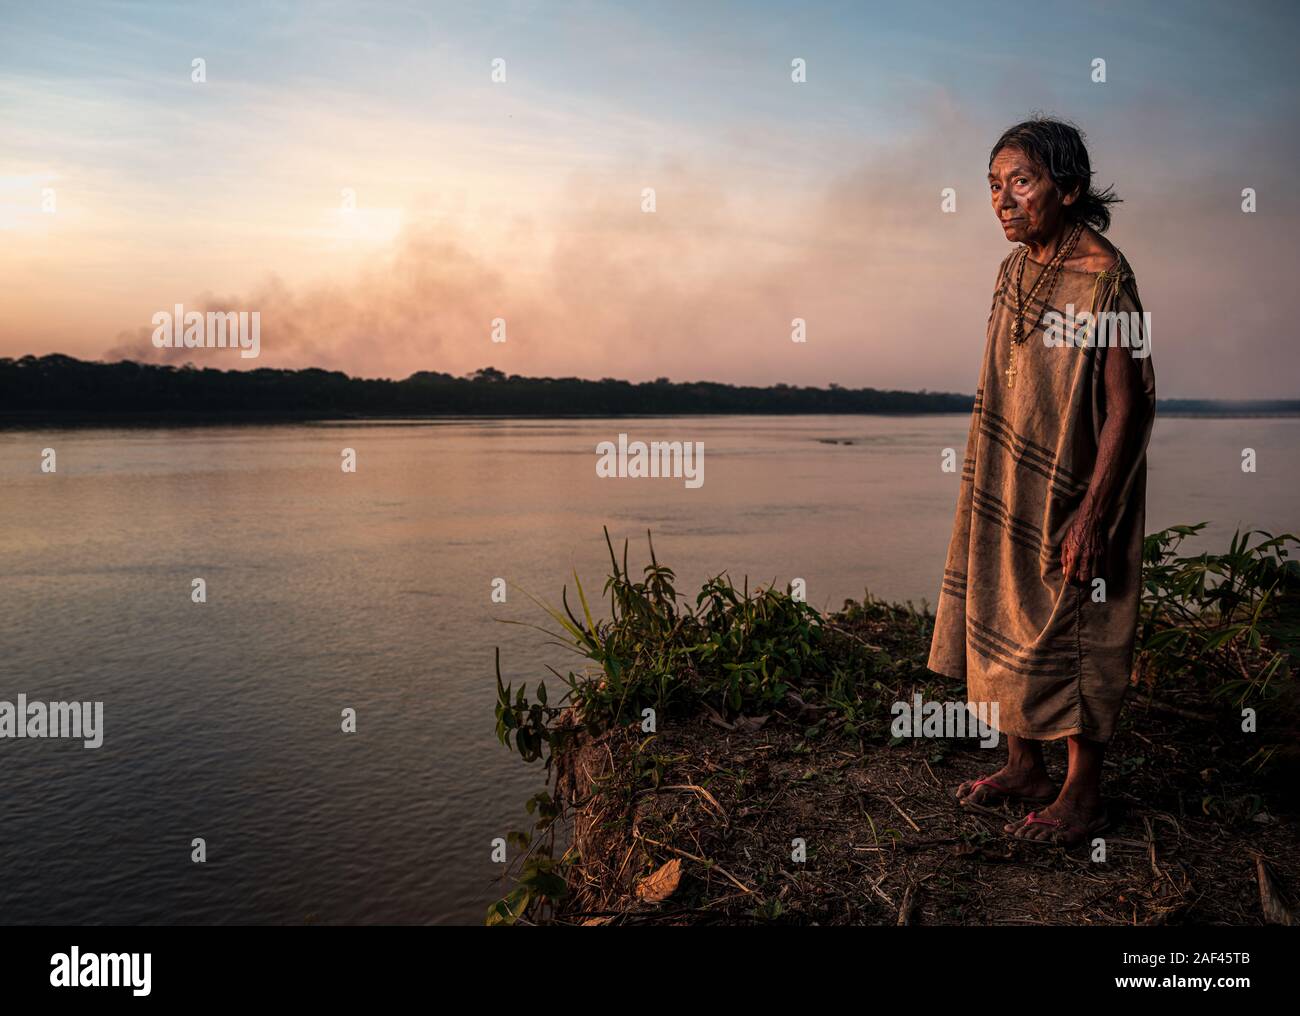 PUERTO MALDONADO, Perù - CIRCA NEL SETTEMBRE 2019: Ritratto di una donna anziana della tribù Machiguenga nell'Amazzonia peruviana. Foto Stock